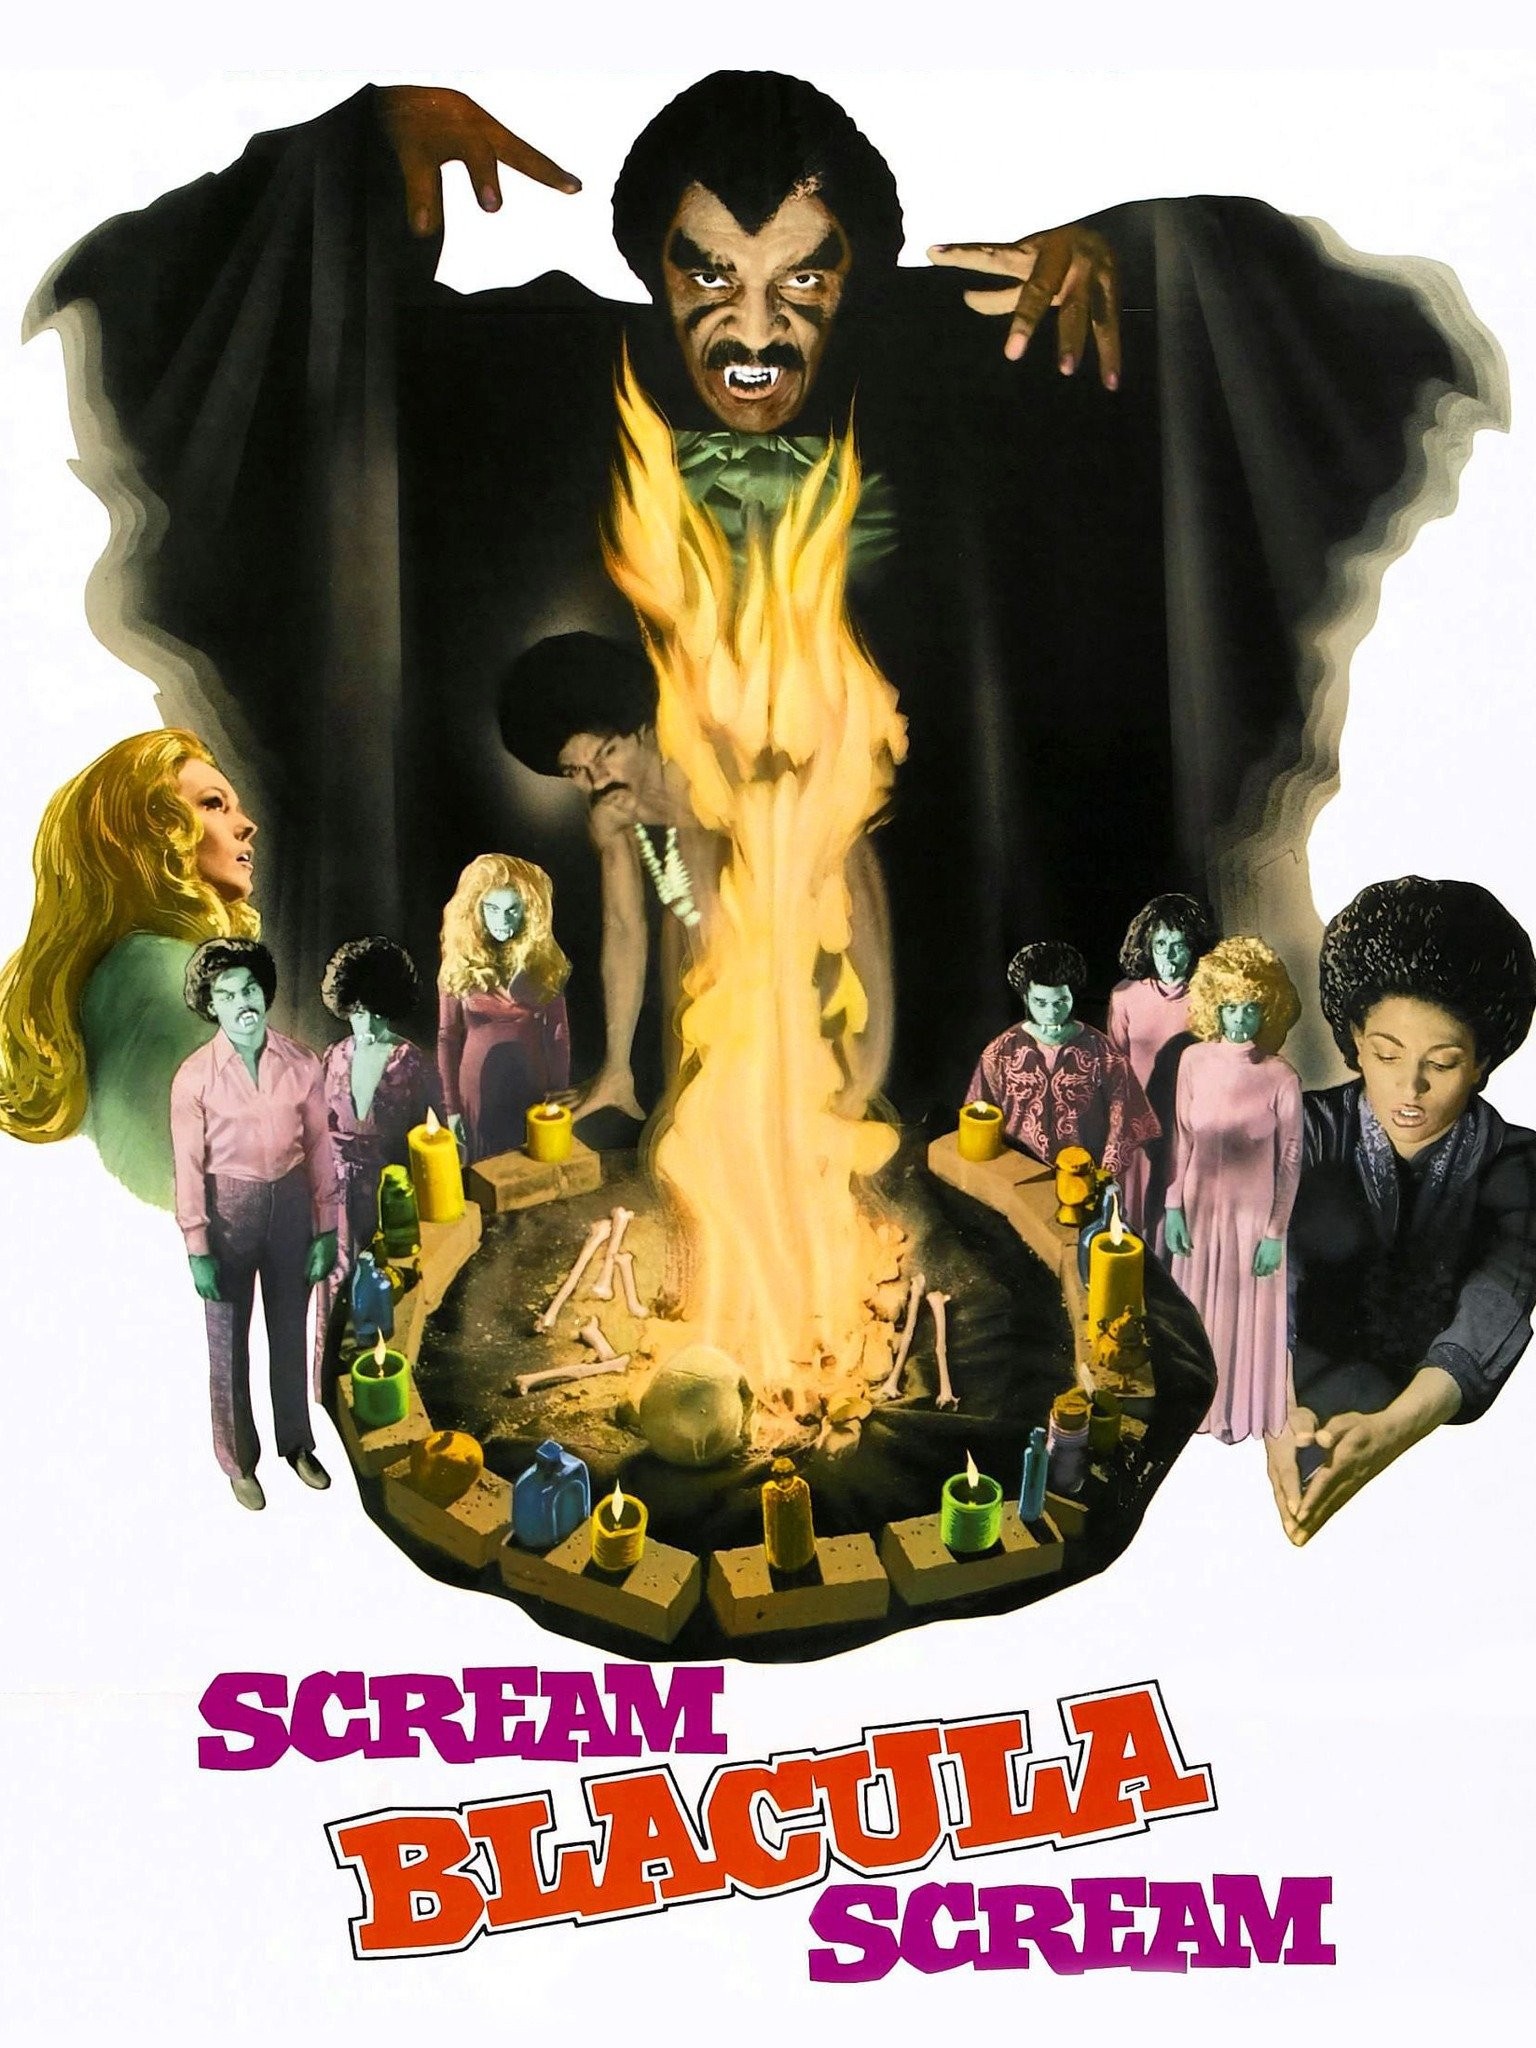 Scream Blacula Scream - Wikipedia